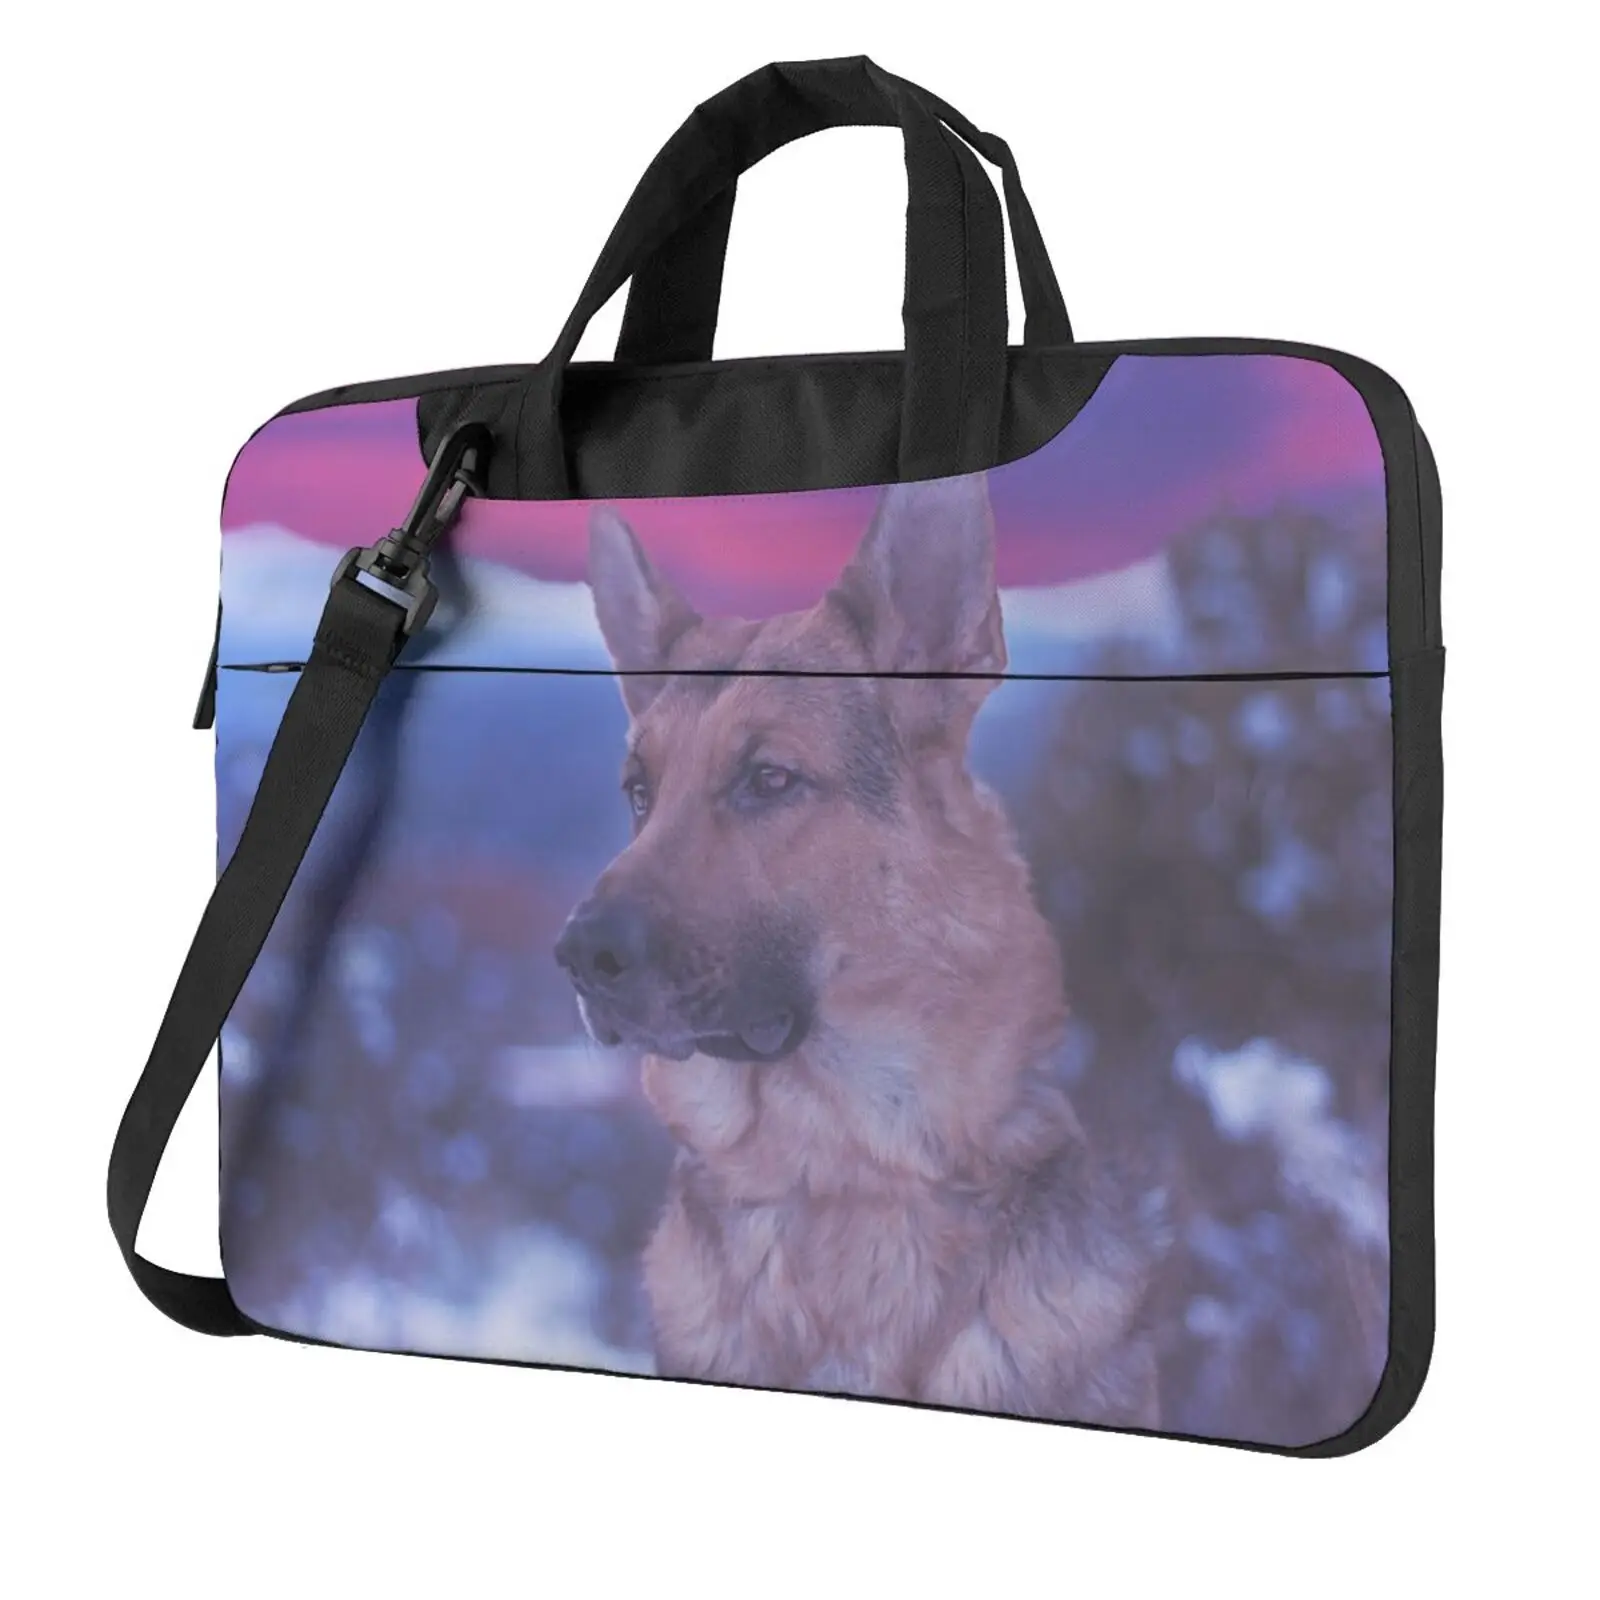 noisydesigns-portable-laptop-bag-german-shepherd-dog-13-14-156inch-shoulder-handbag-messenger-case-laptop-sleeve-for-macbook